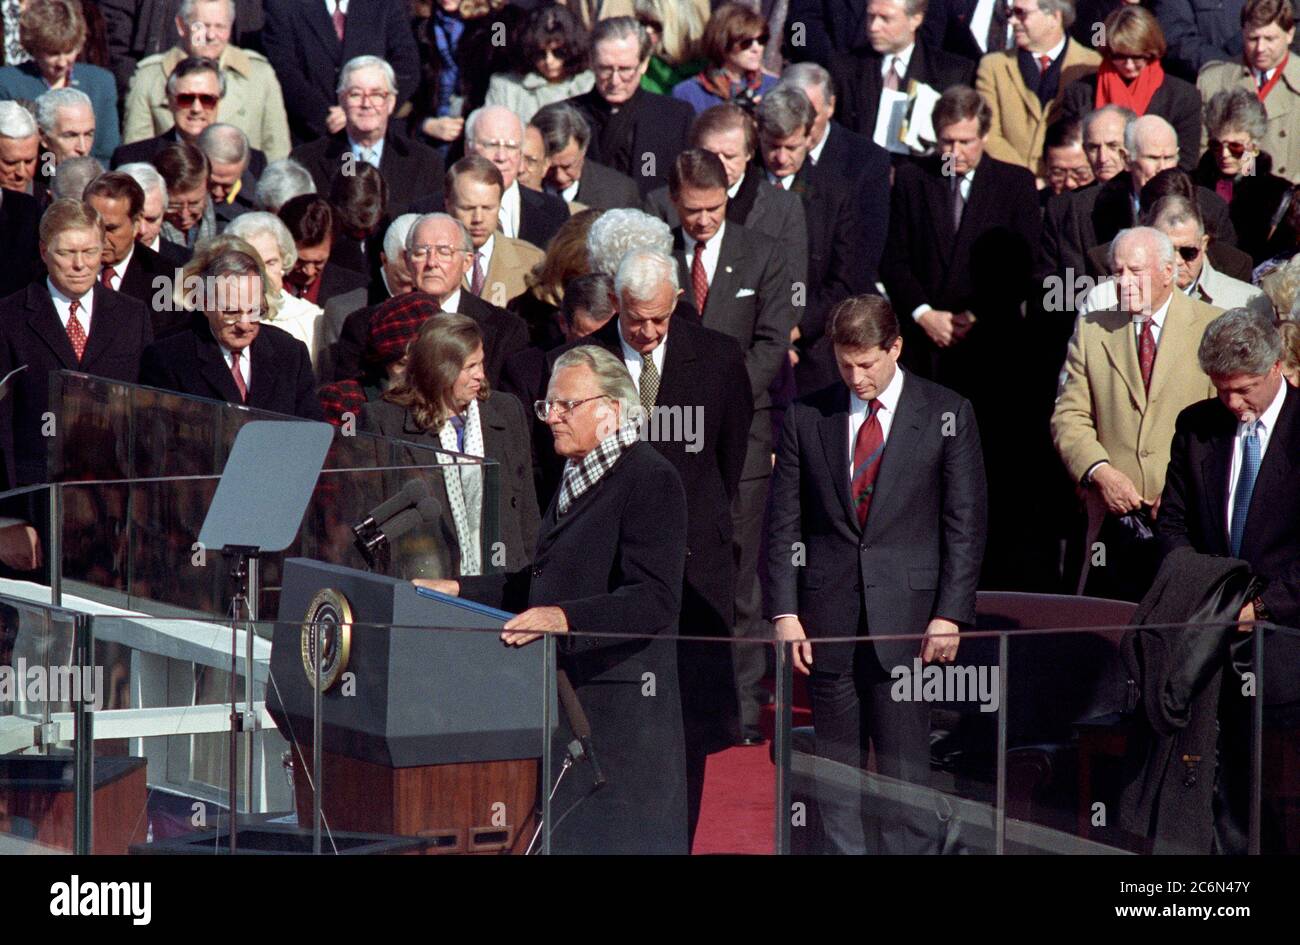 Photographie du Président William Jefferson Clinton et le Vice-président Al Gore en priant avec le révérend Billy Graham lors de la cérémonie d'investiture présidentielle Banque D'Images